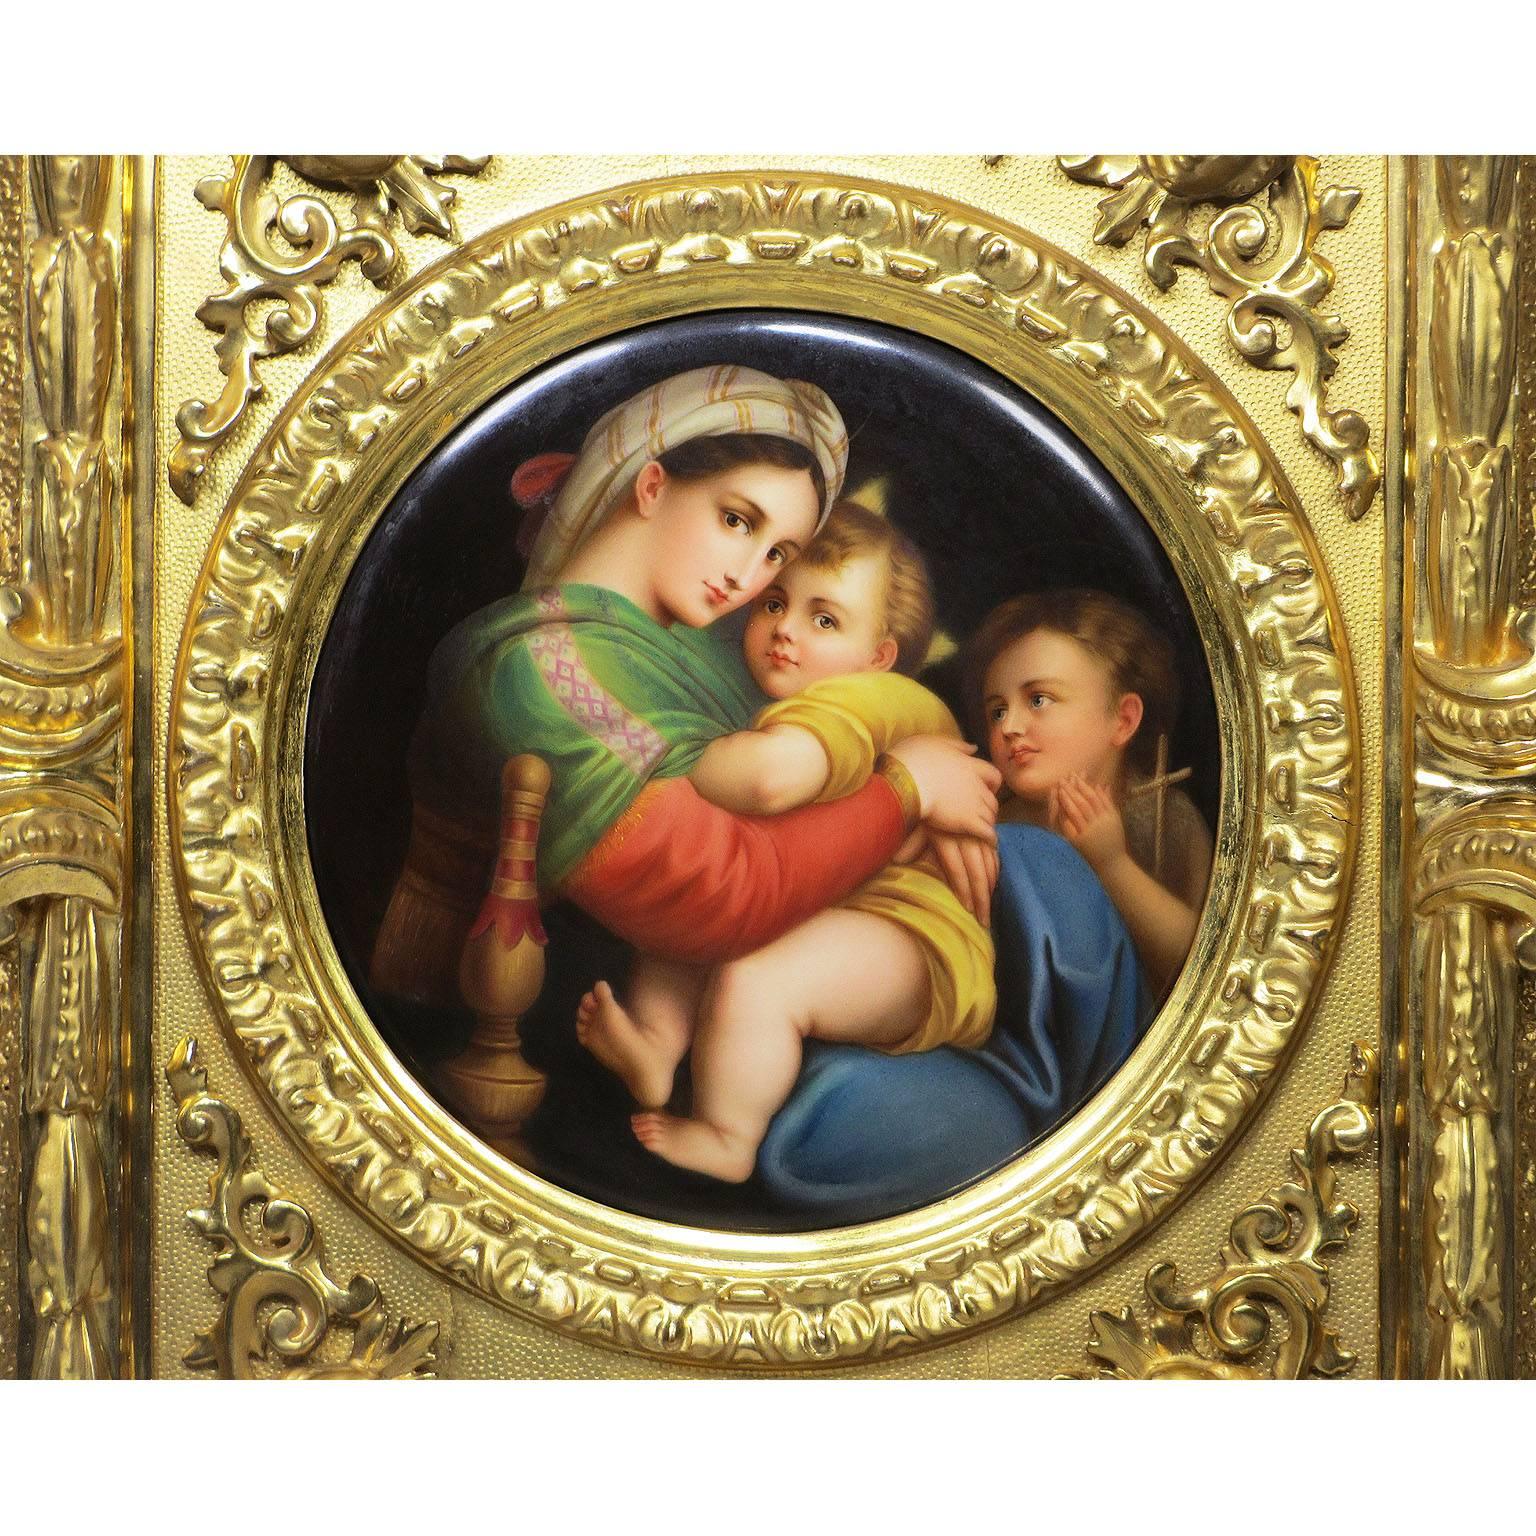 Très belle plaque circulaire en porcelaine allemande du XIXe siècle représentant La Madonna della Sedia d'après Raphaël Sanzio (1483-1520), représentant une Madone et un enfant assis à côté d'un enfant Saint John, dans un cadre figuratif sculpté en